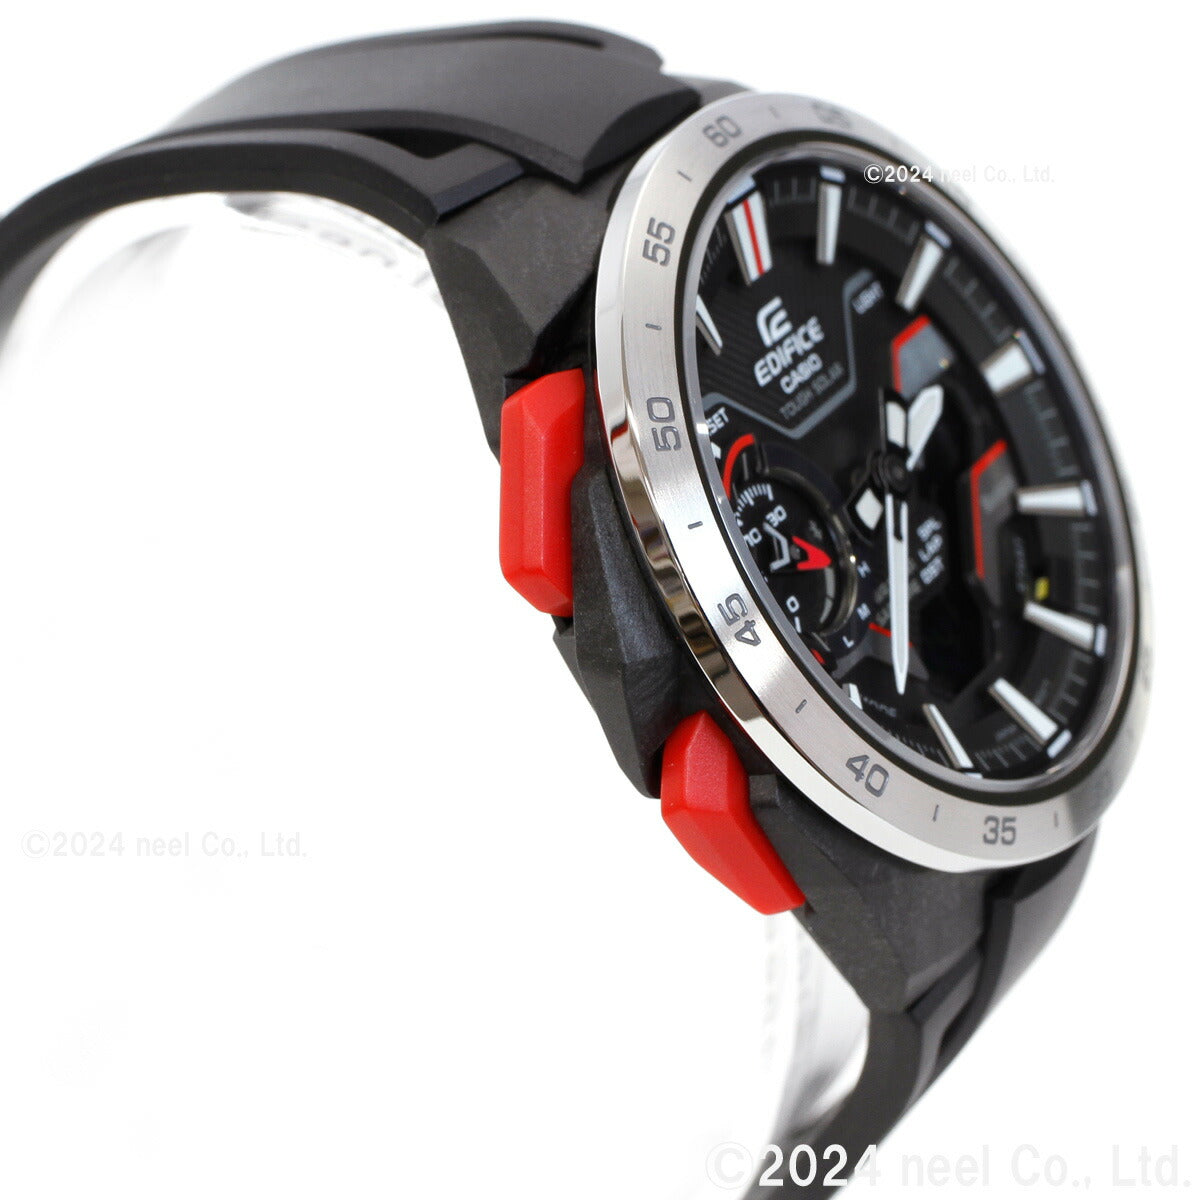 カシオ エディフィス CASIO EDIFICE WINDFLOW ECB-2200YP-1AJF アナデジ 腕時計 メンズ クロノグラフ ウィンドフロウ スマートフォンリンク